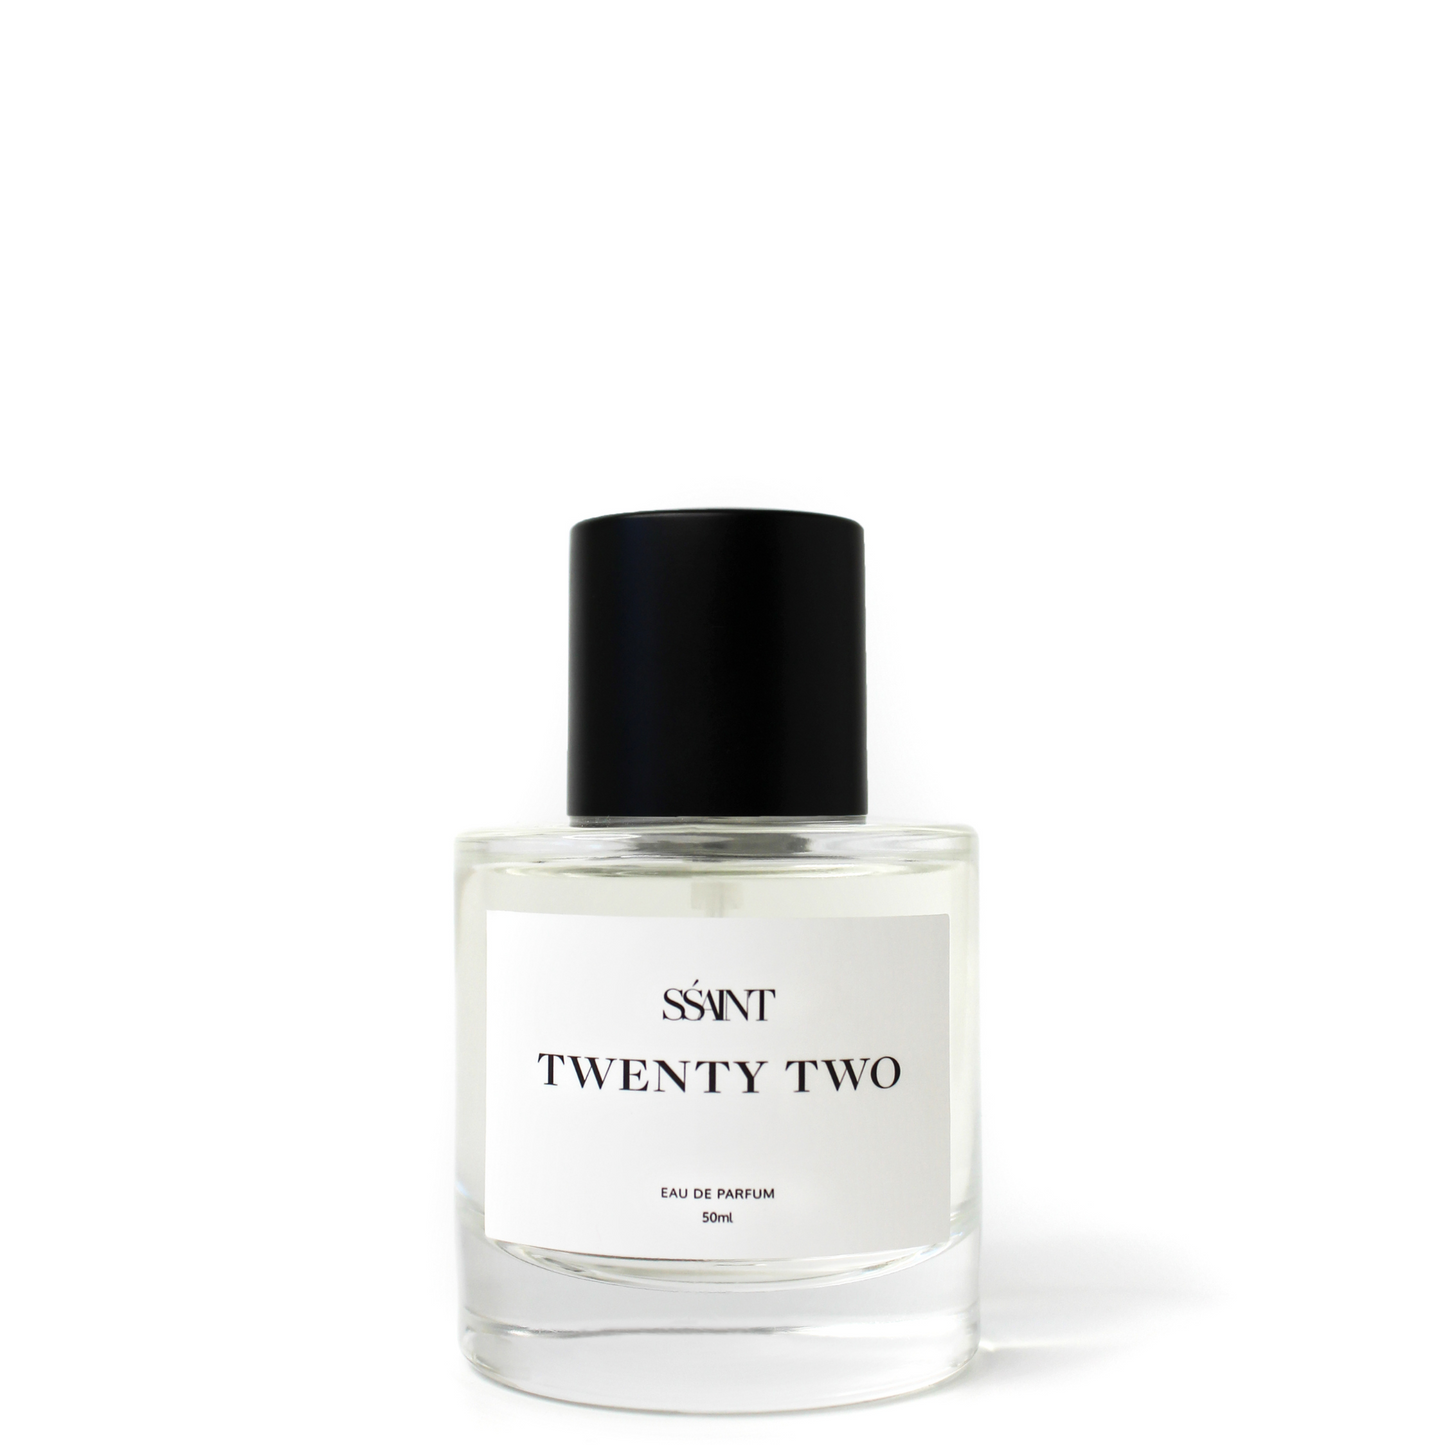 Ssaint Twenty Two Perfume 50ml